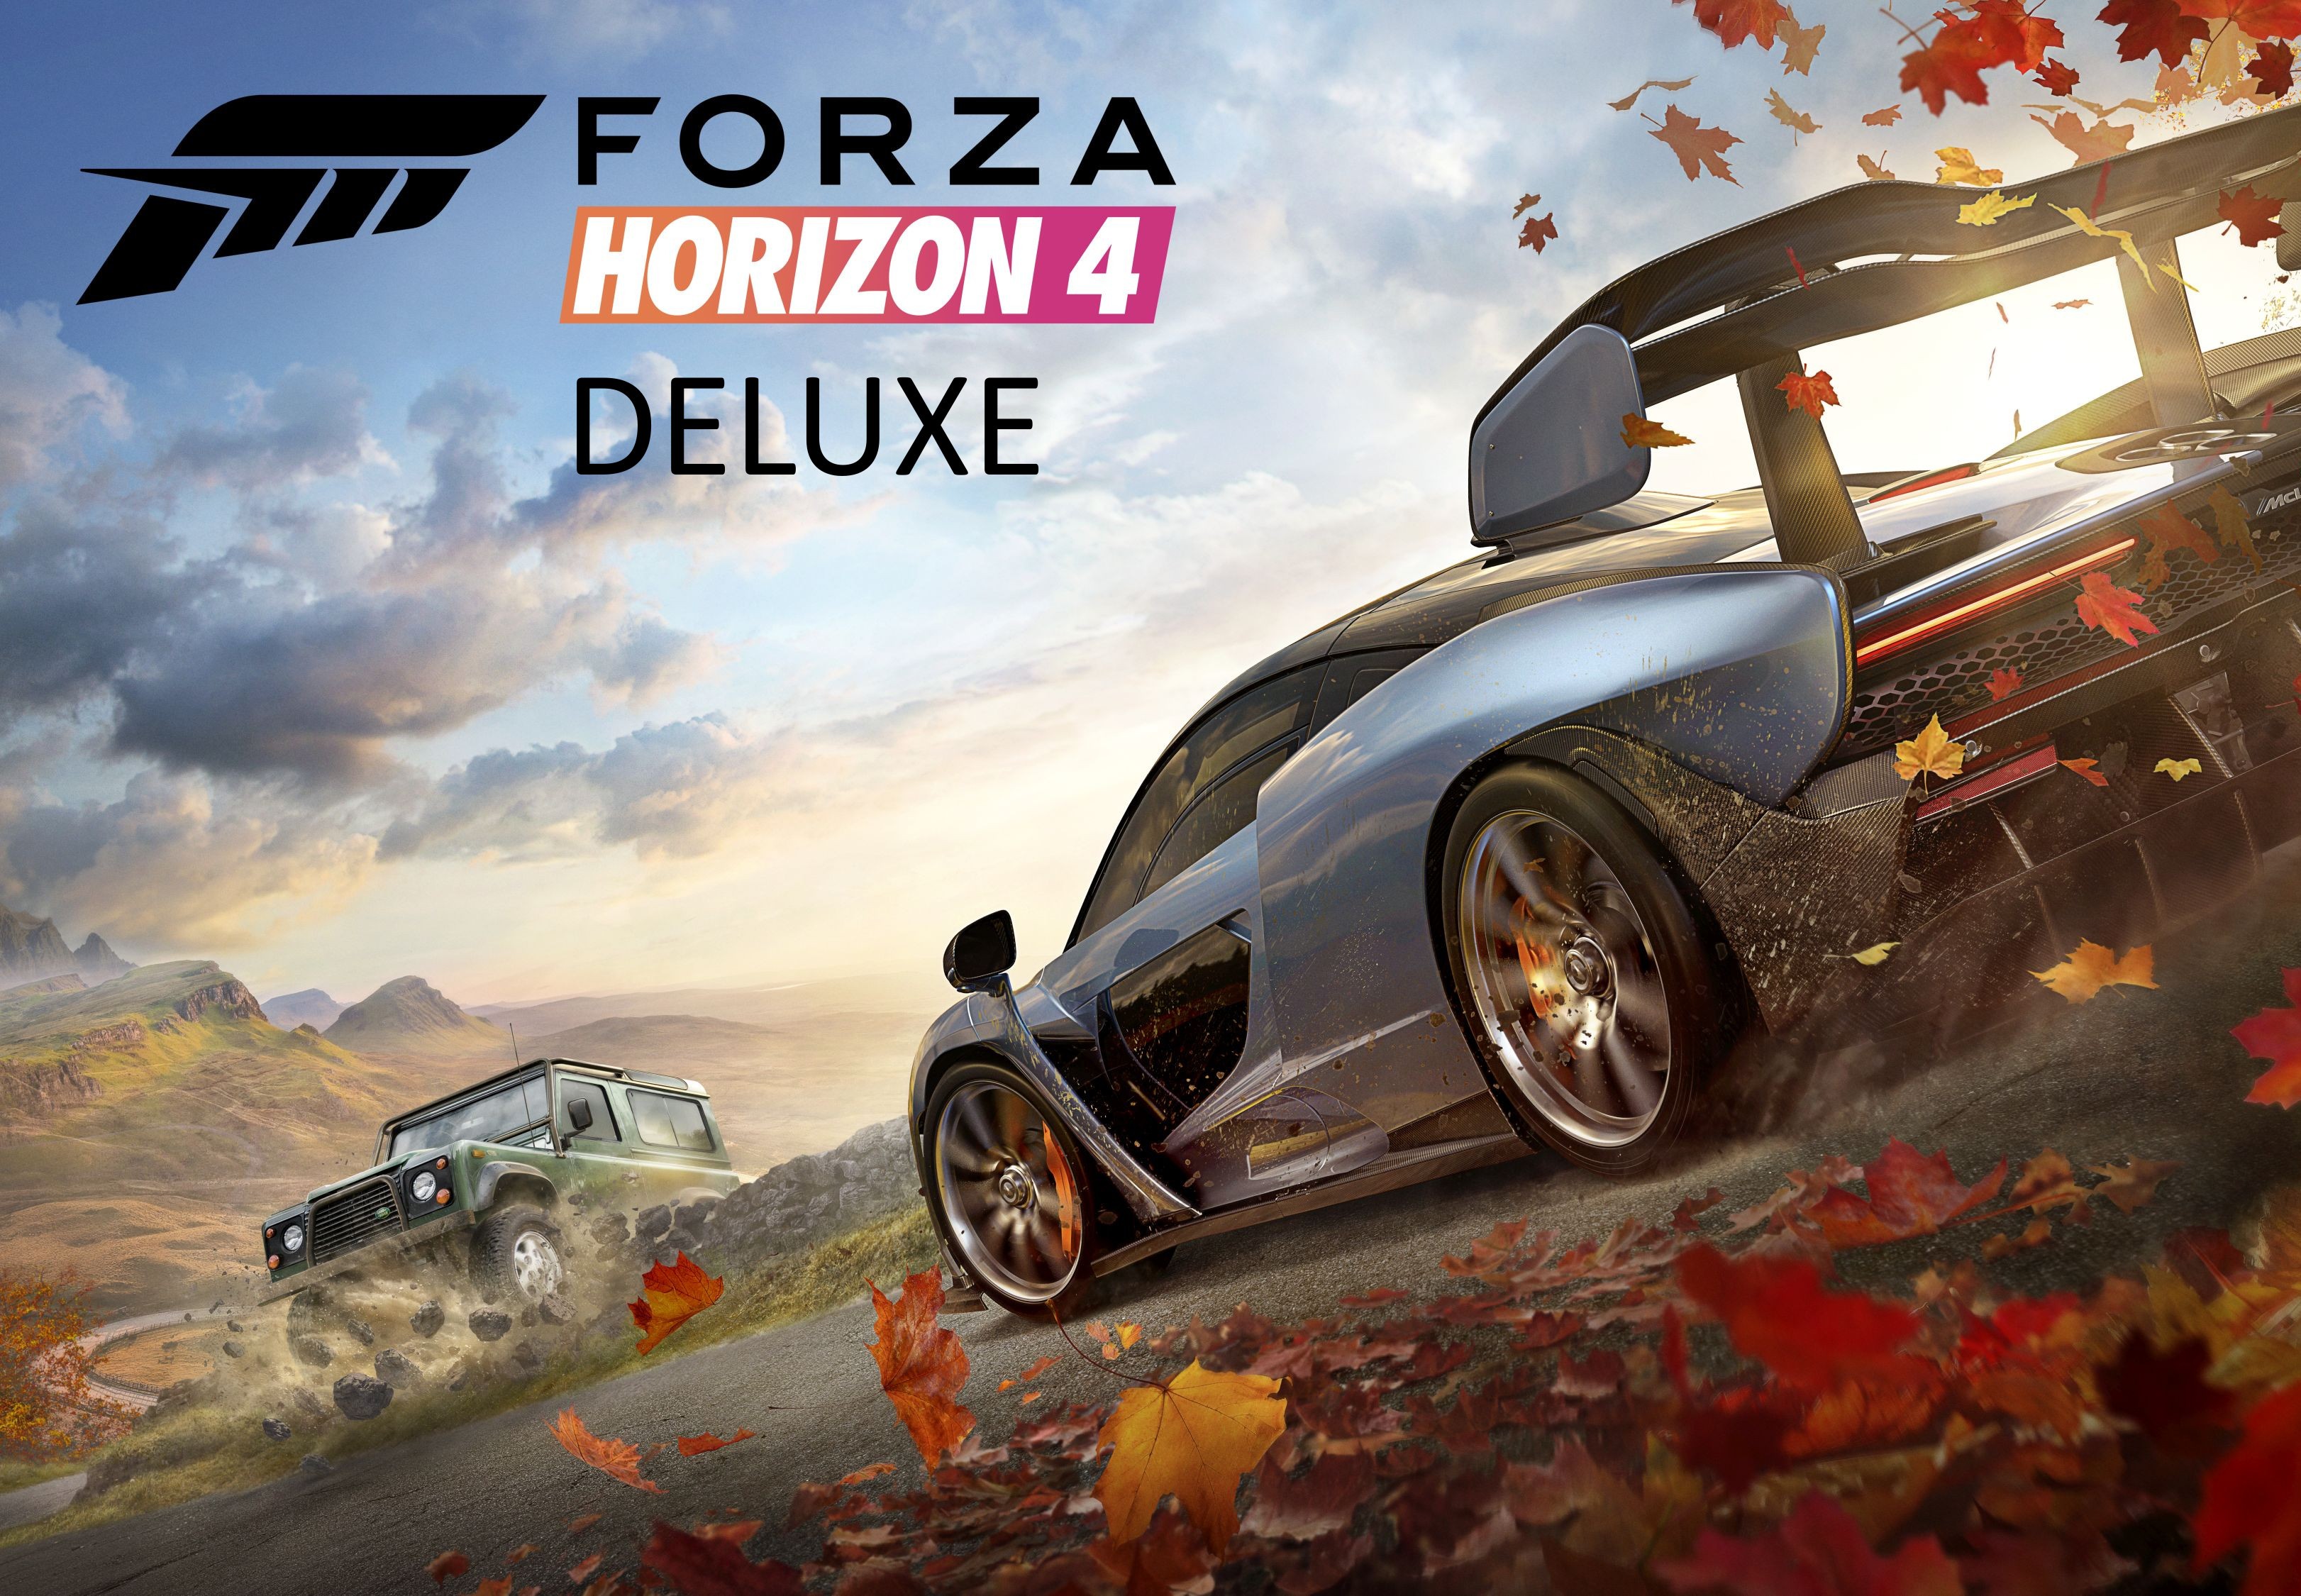 Forza Horizon 4 Deluxe Edition EG XBOX One / Xbox Series X|S / Windows 10 CD Key